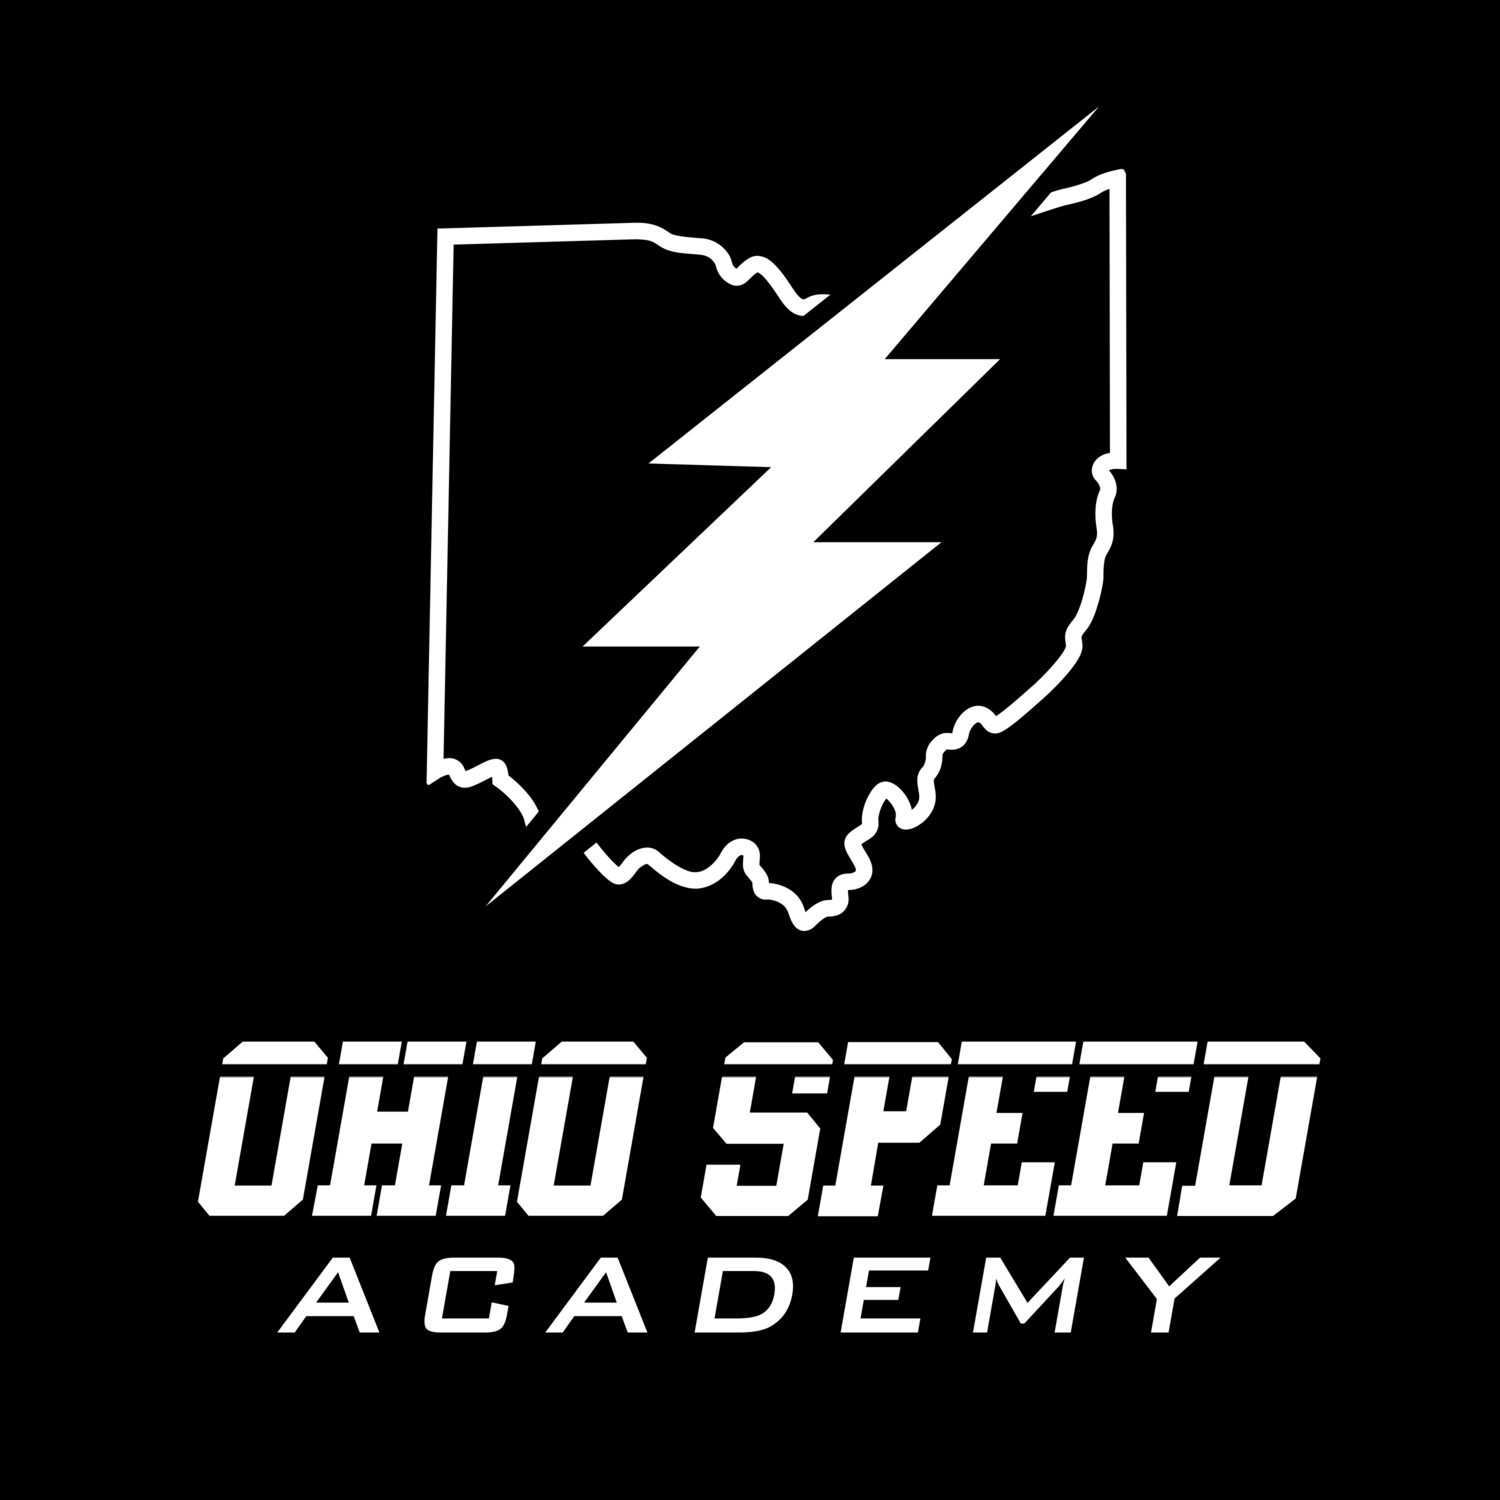 Ohio Speed Academy